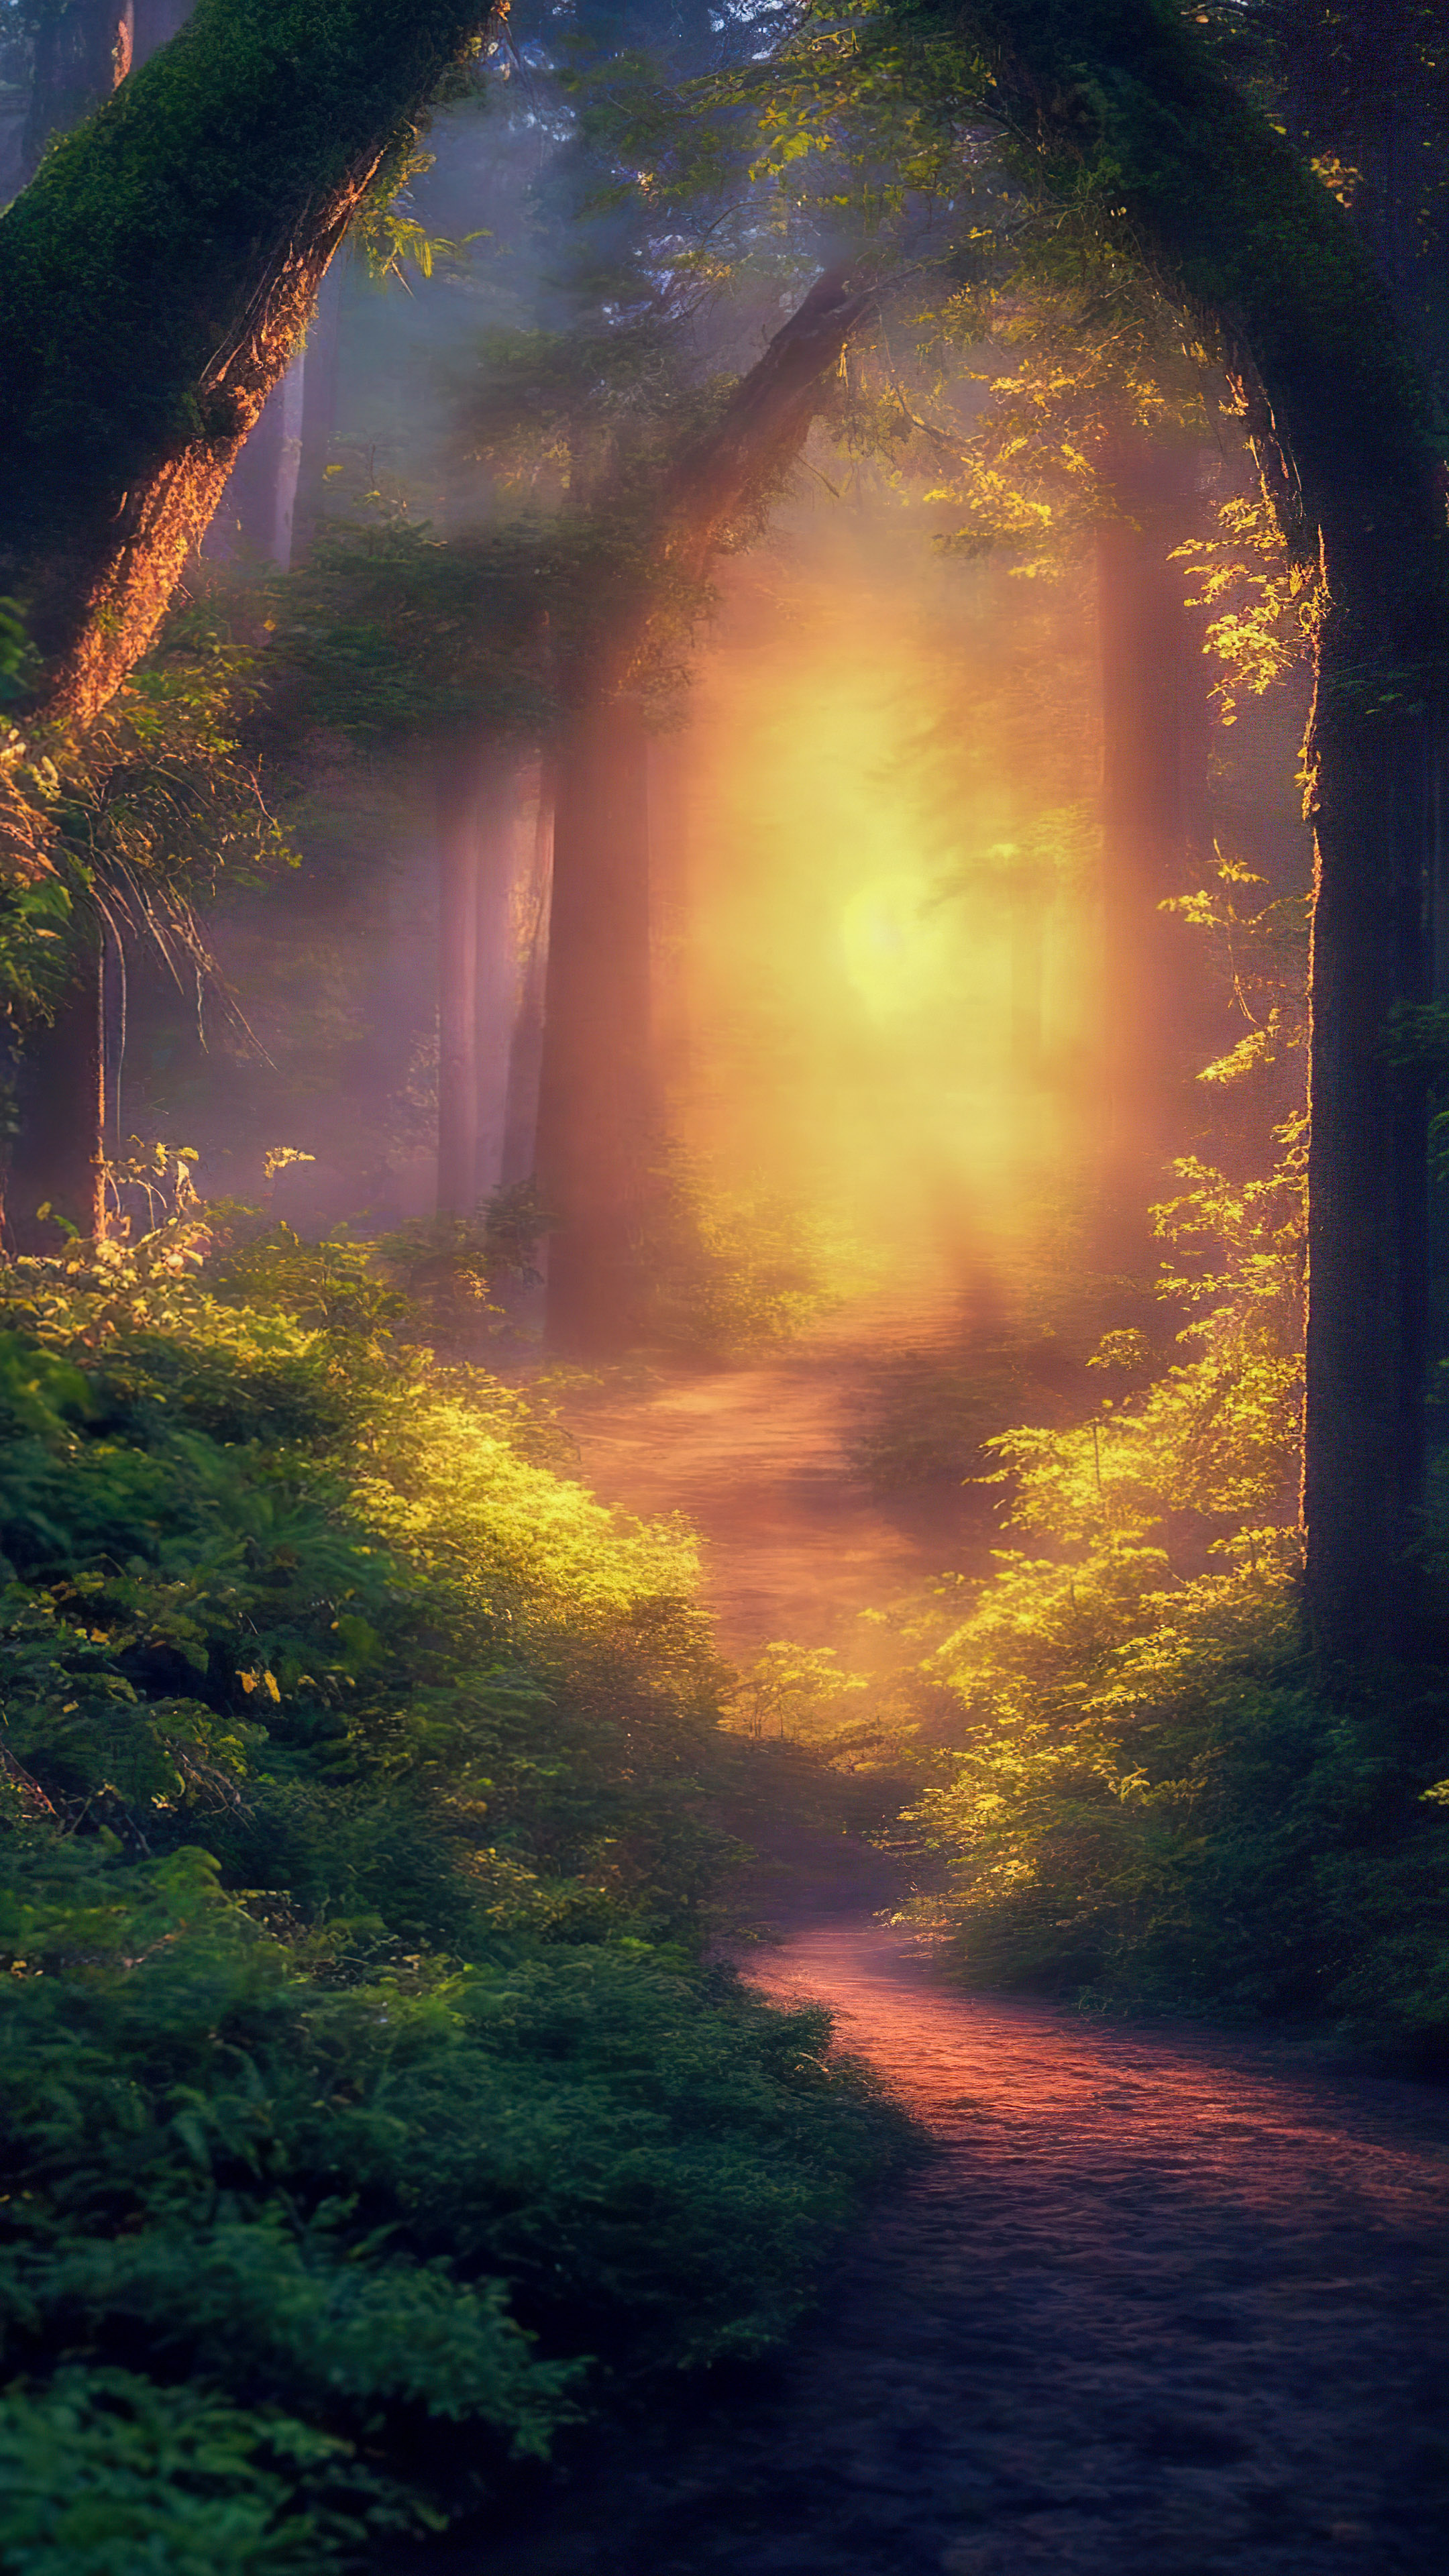 Immergez-vous dans une forêt magique illuminée par la douce lueur des lucioles lors d'une chaude soirée d'été avec notre arrière-plan de nature en 4K.